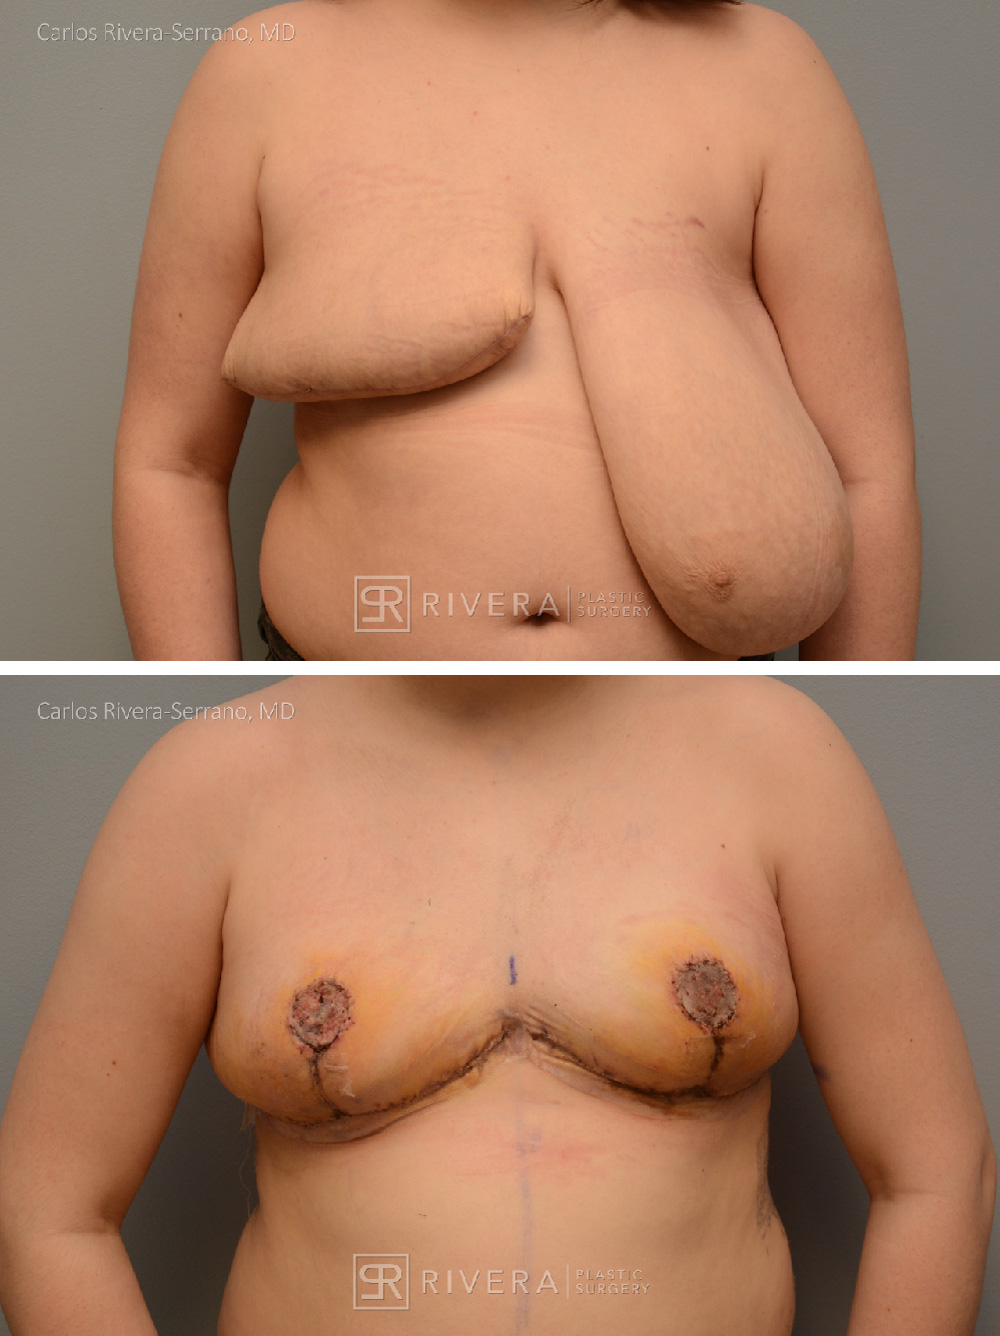 Breast Reduction Gallery - Case #23 - Dr. Carlos Rivera-Serrano MD